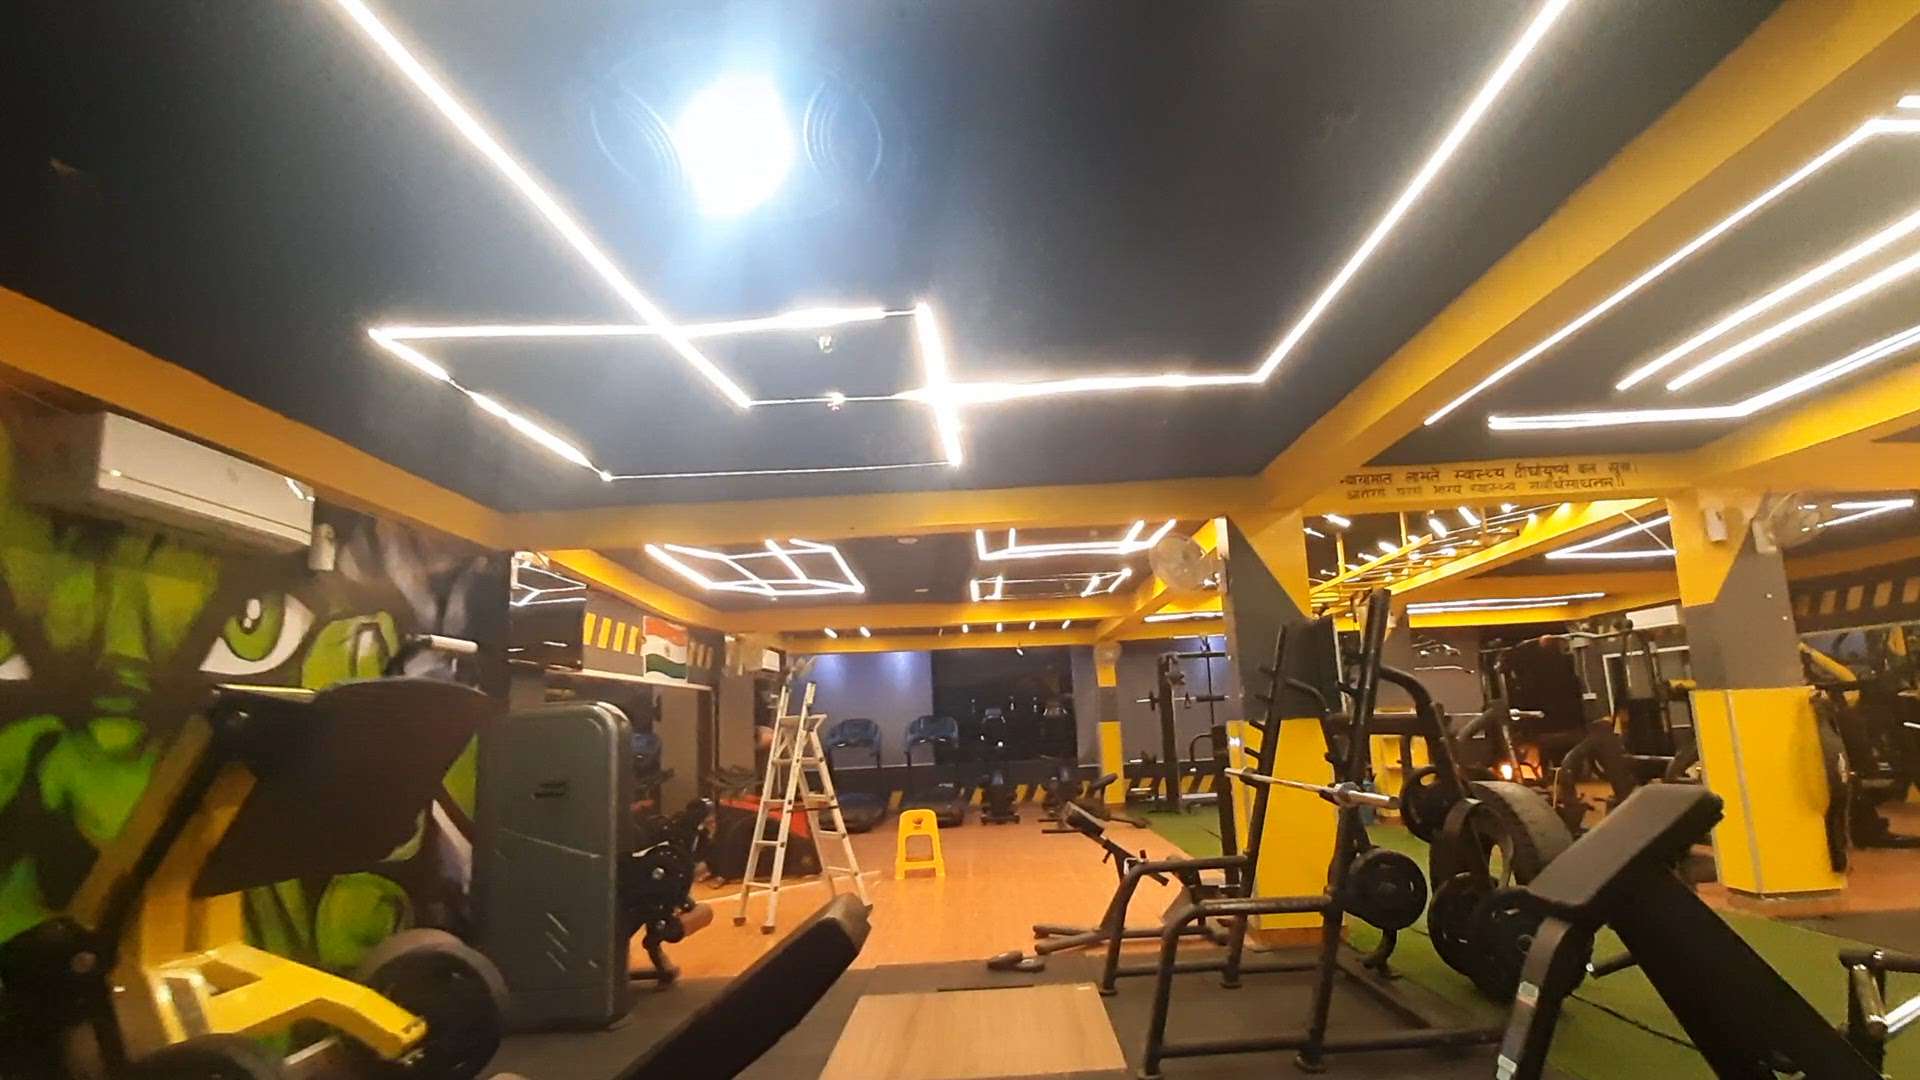 #gym interior 
profile light  call 96601 51394